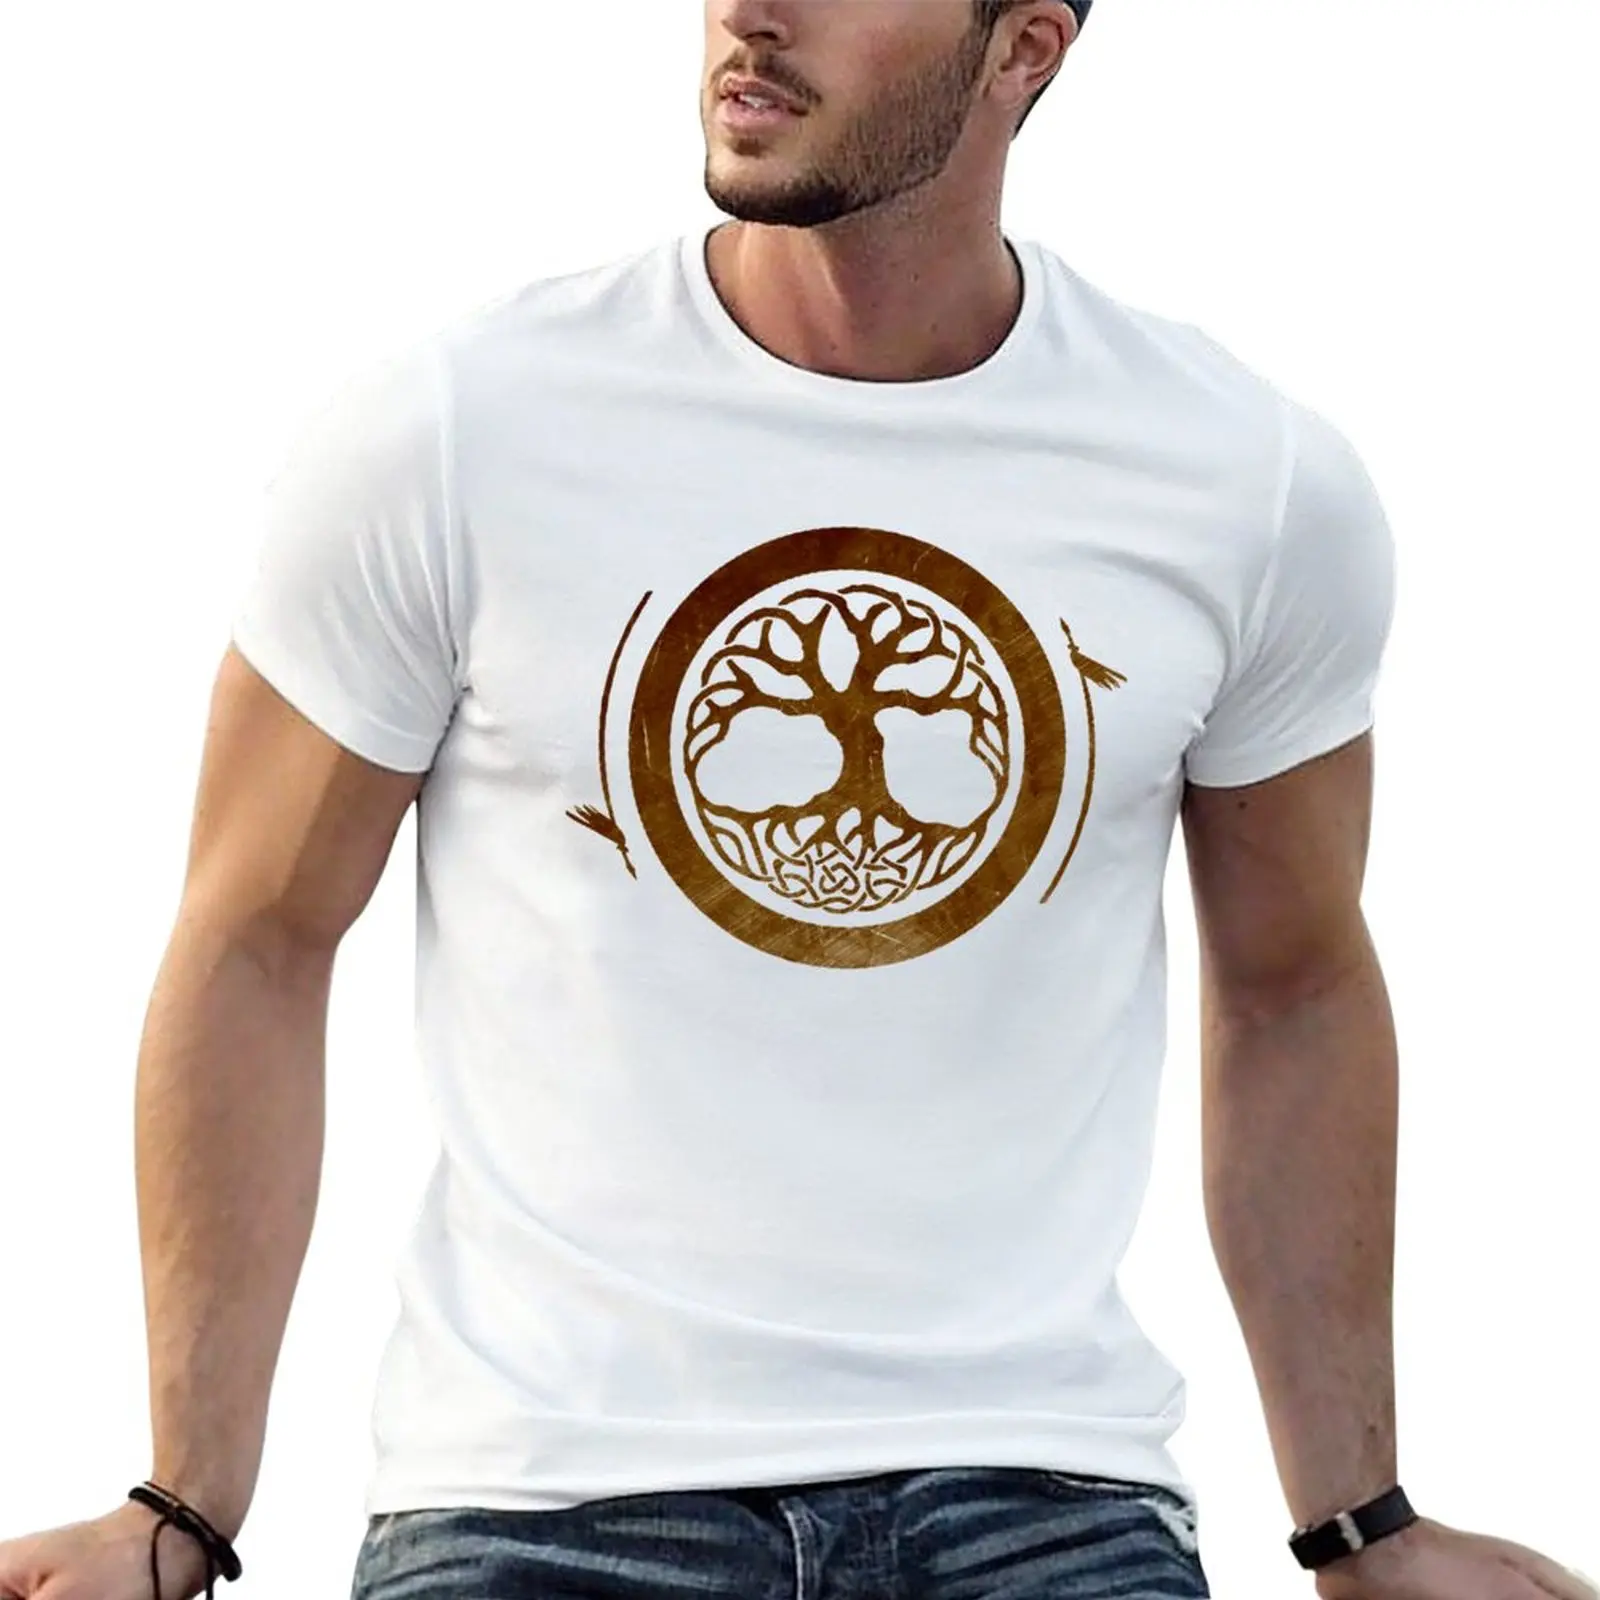 

Железная деревья, логотип доджо, Золотая Футболка, забавная футболка, s графическая футболка, размера плюс t shirt s graphic t shirt s, мужские Графические футболки